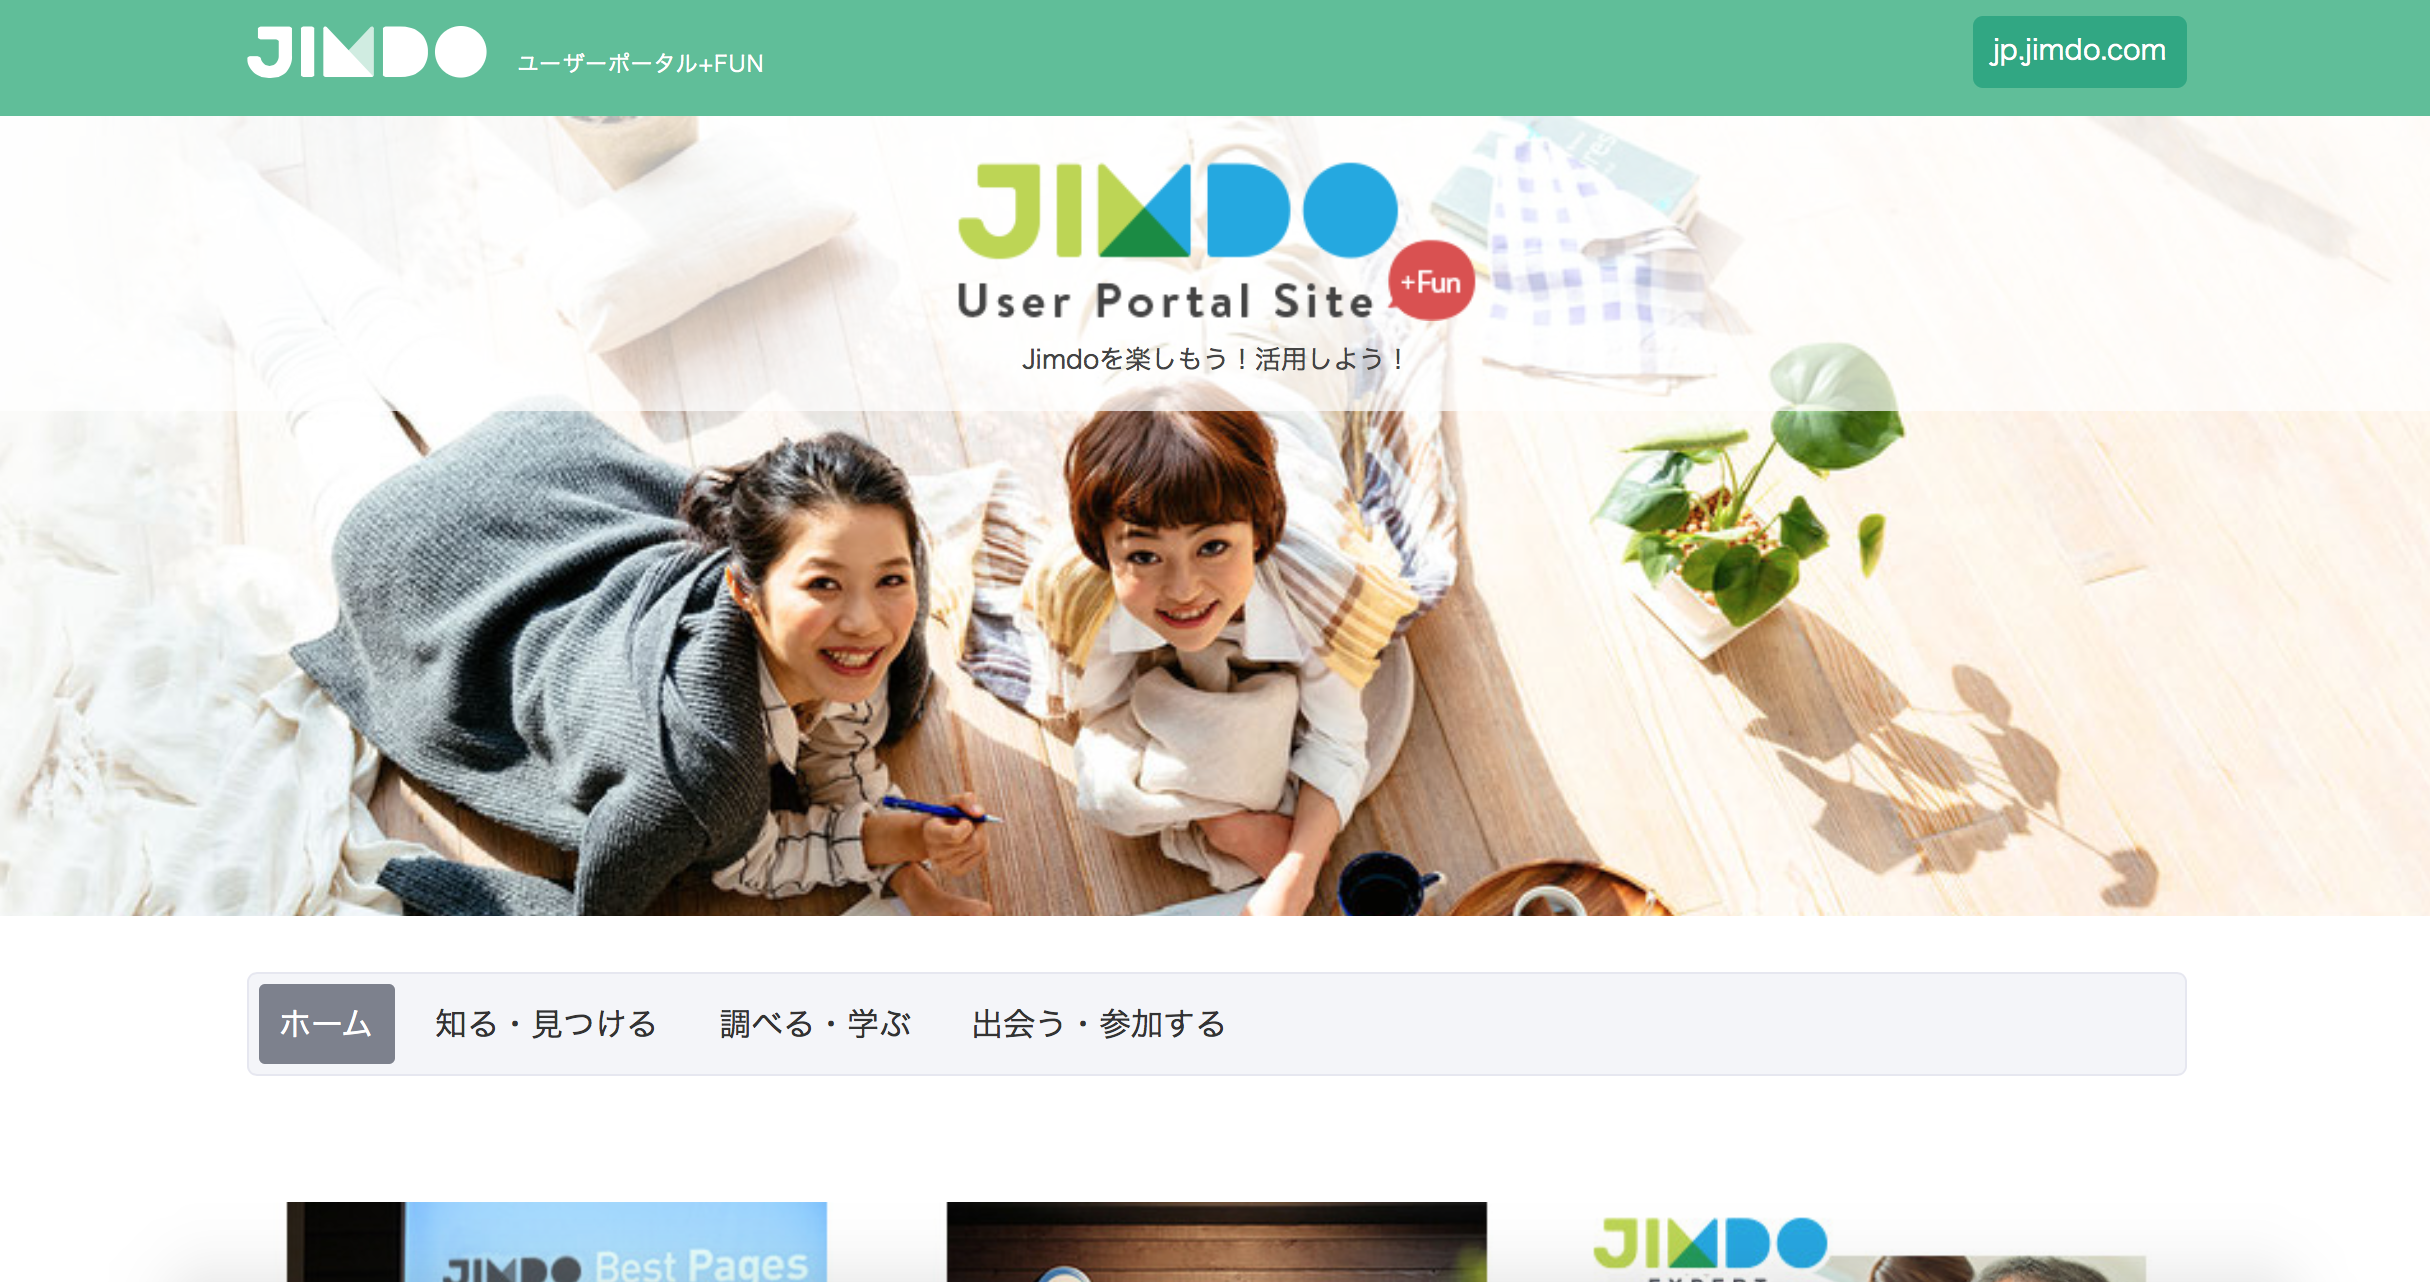 Jimdoユーザーポータルのトップ画像